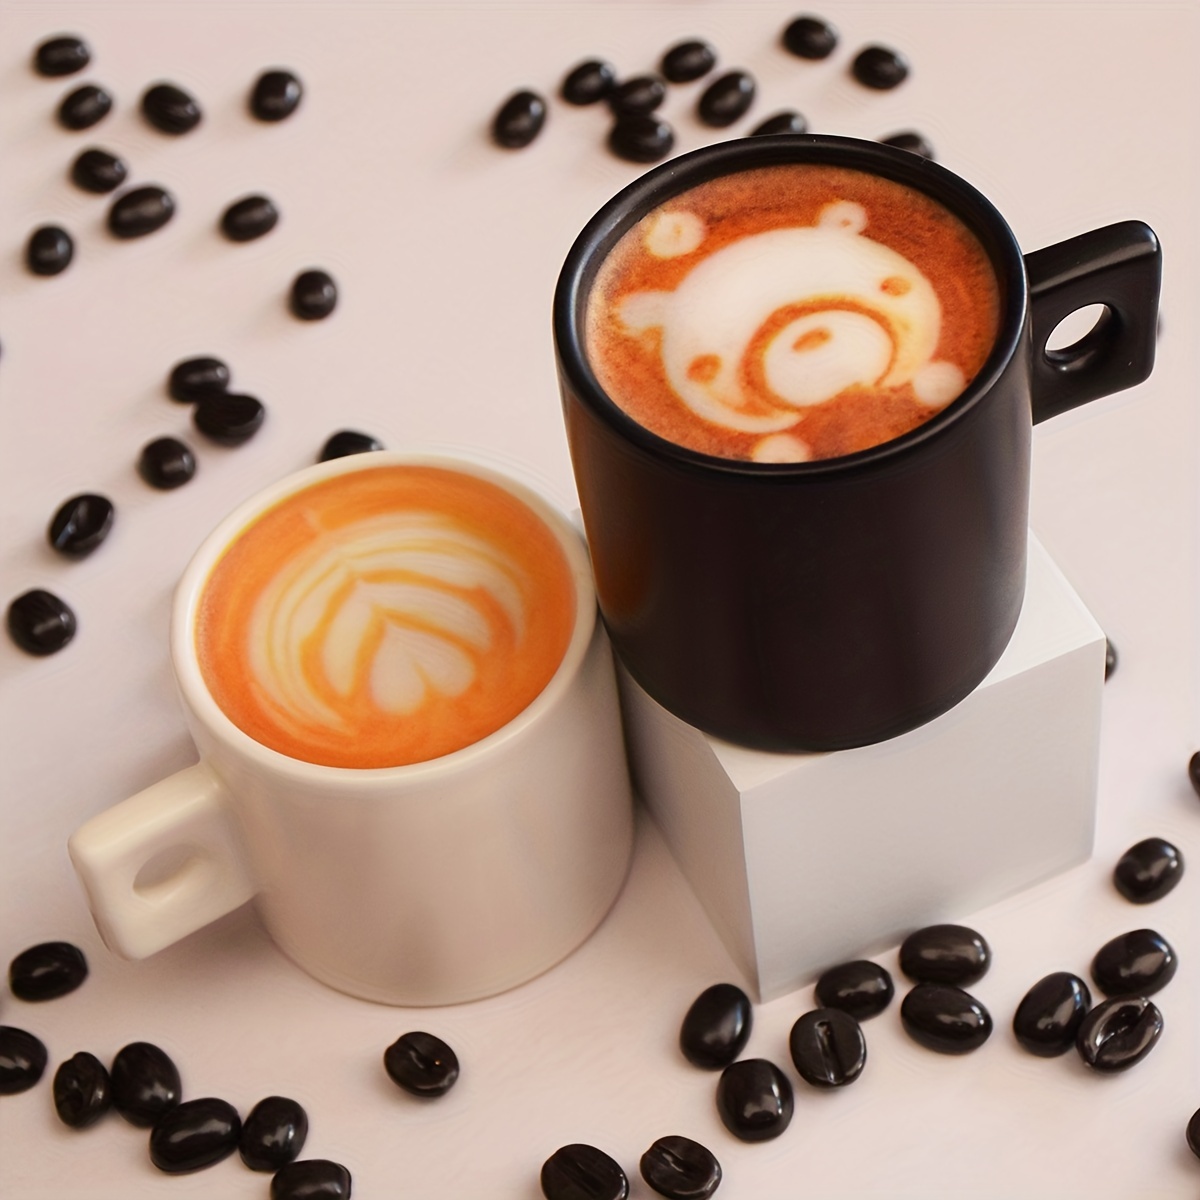 El Mercado De Juguetes - Minnie Mouse Brunch Café 💕 ¡El café desaparece  mágicamente de la cafetera! Incluye 30 accesorios con temática de Minnie.  Edad recomendada 3+ años. Mide 39” pulgadas de alto. #ElMercadoDeJuguetes  #Quebradillas